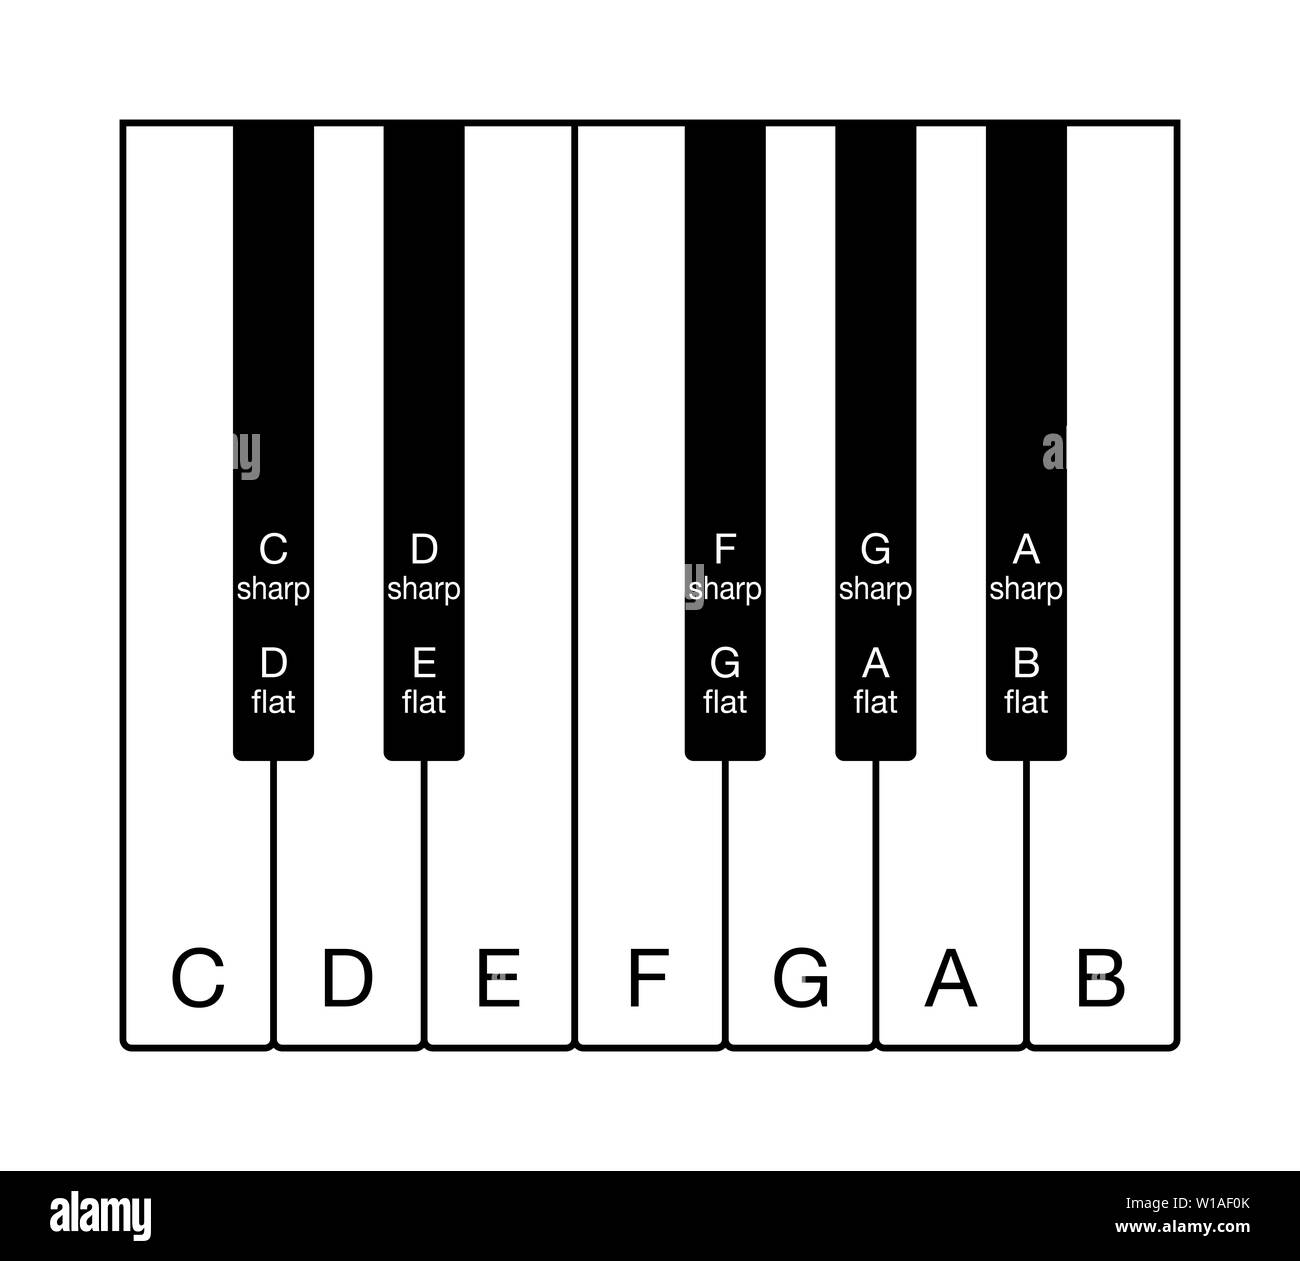 L'échelle chromatique de douze sons sur un clavier. Une octave de notes de  la gamme musicale de l'Ouest. Douze touches de C à B avec noms des notes en  anglais Photo Stock -